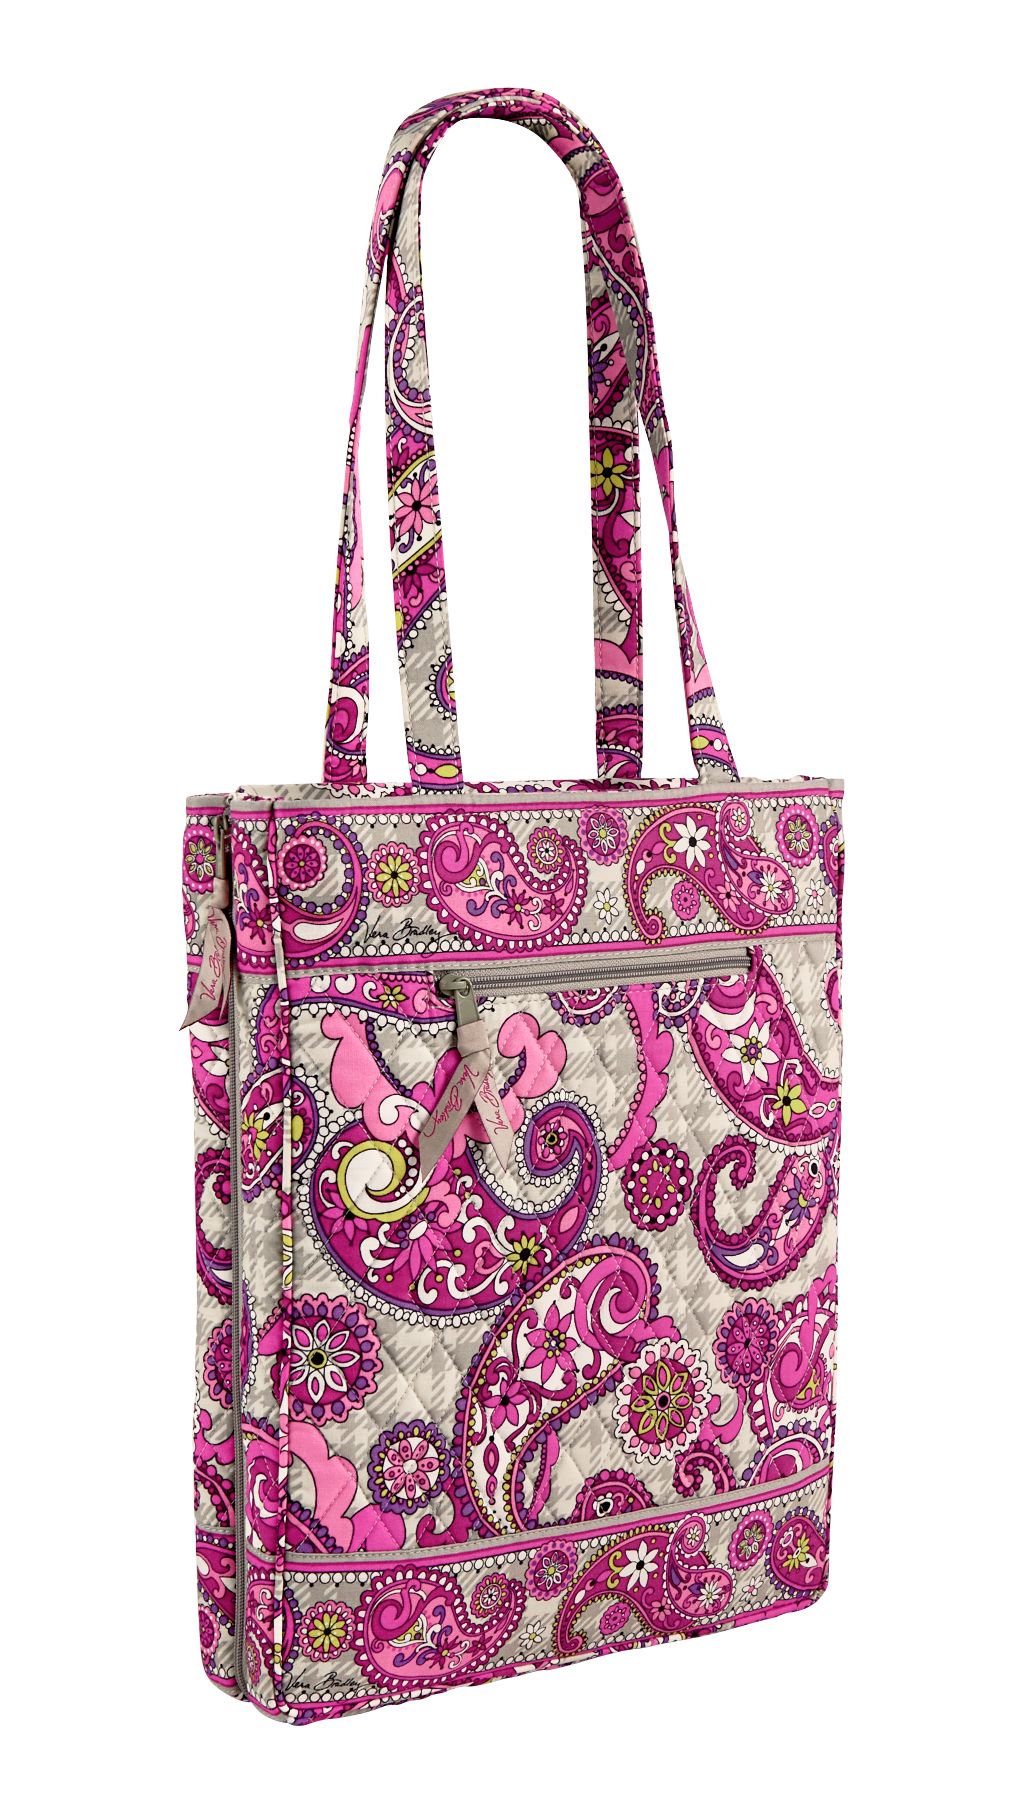 Vera Bradley Laptop Travel Tote Bag | eBay